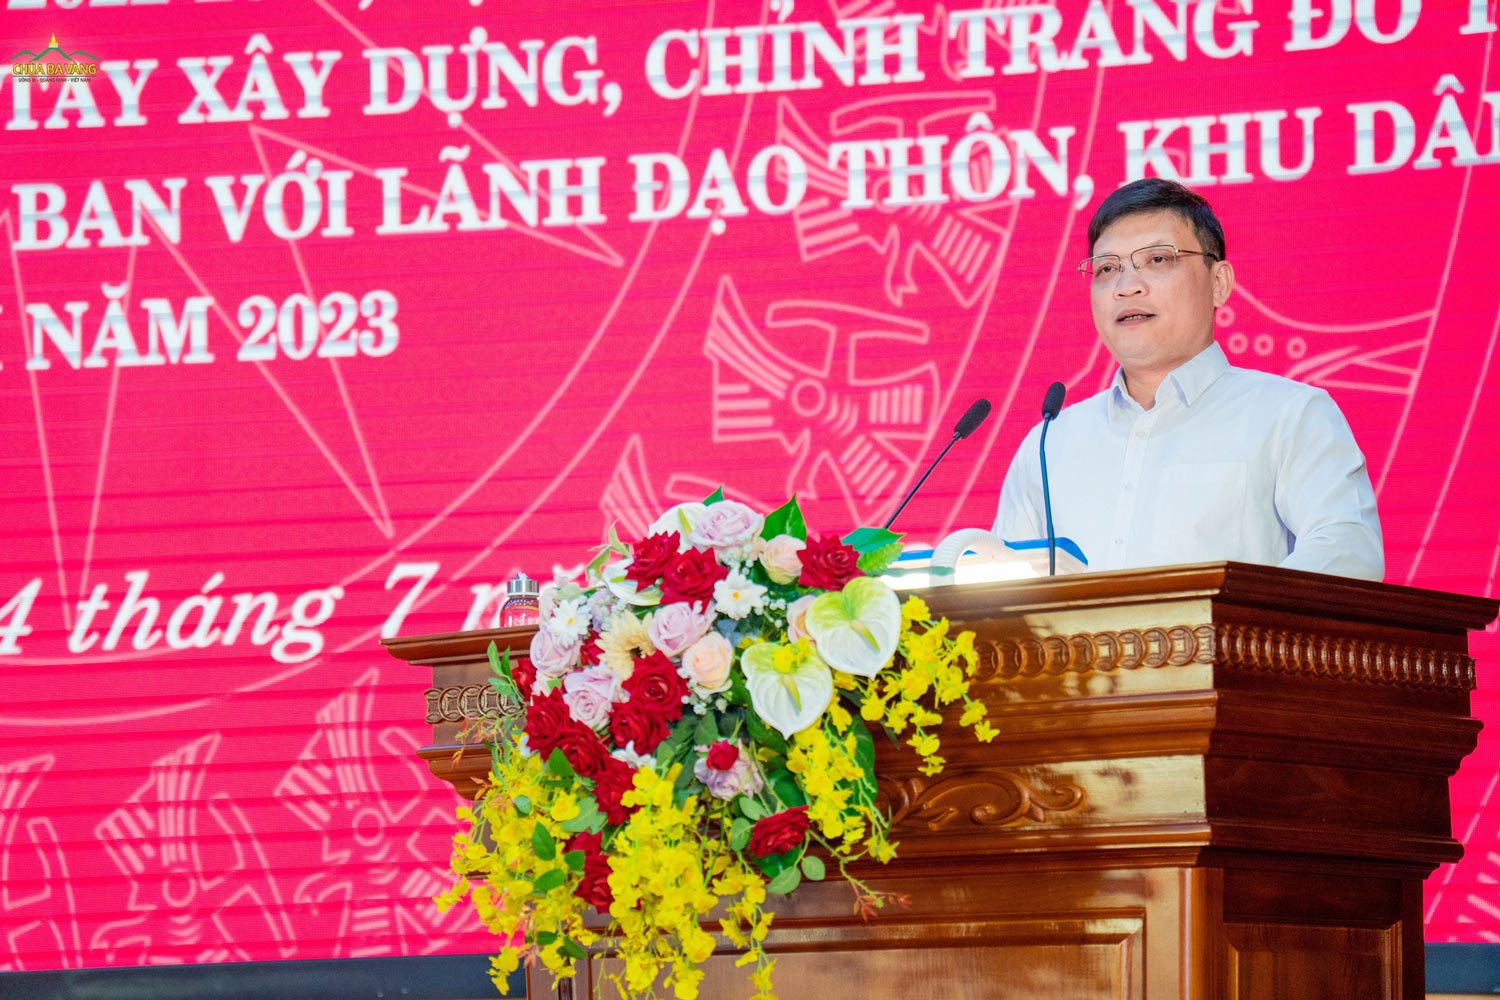 Ông Nghiêm Xuân Cường (Ủy viên Ban Chấp hành Đảng bộ tỉnh, Bí thư Thành ủy, Chủ tịch Hội đồng nhân dân Thành phố Uông Bí) phát biểu tại hội nghị